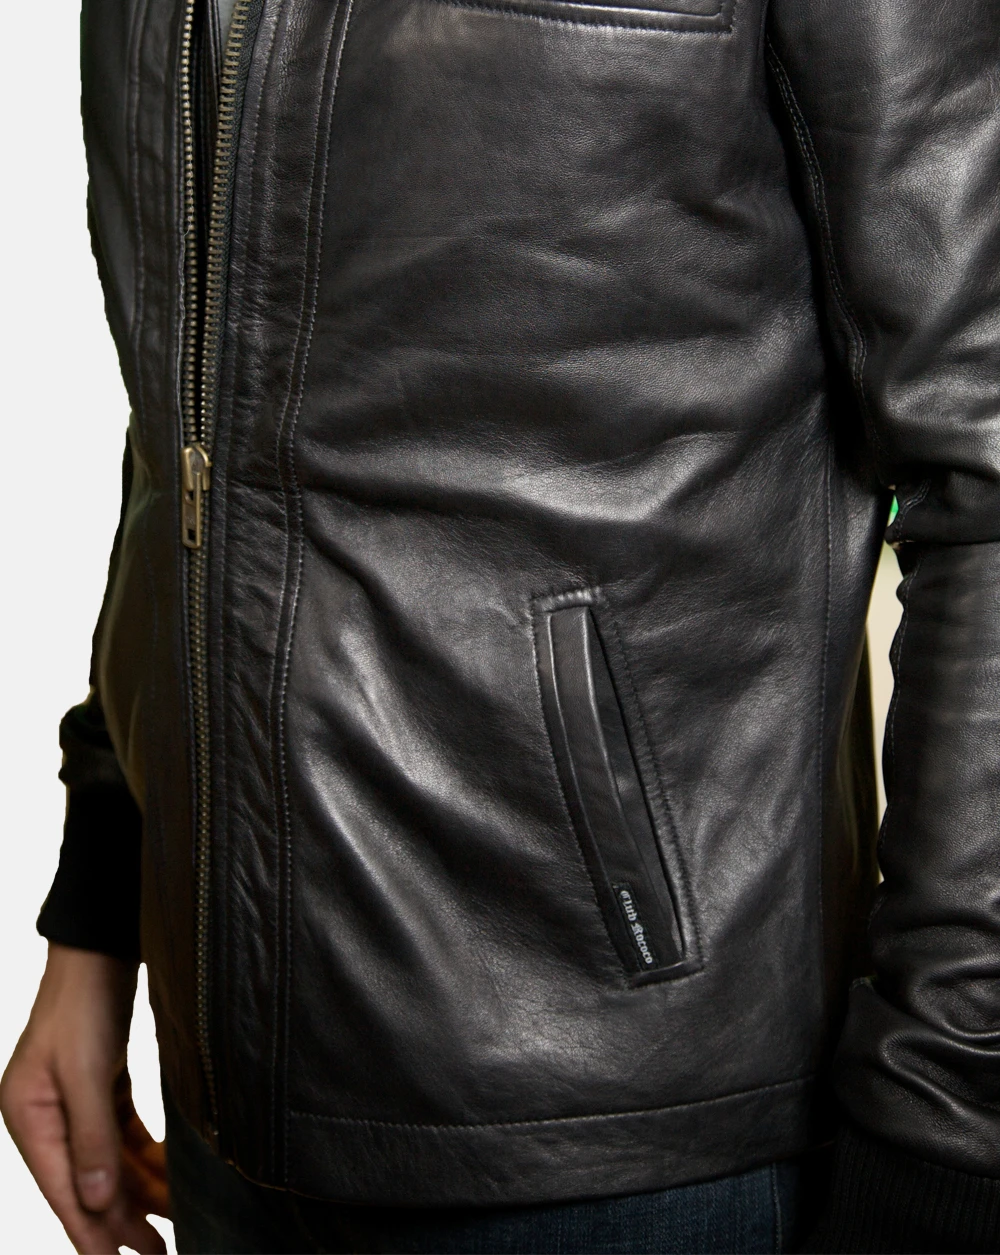 Stylish slim fit men leather jacket